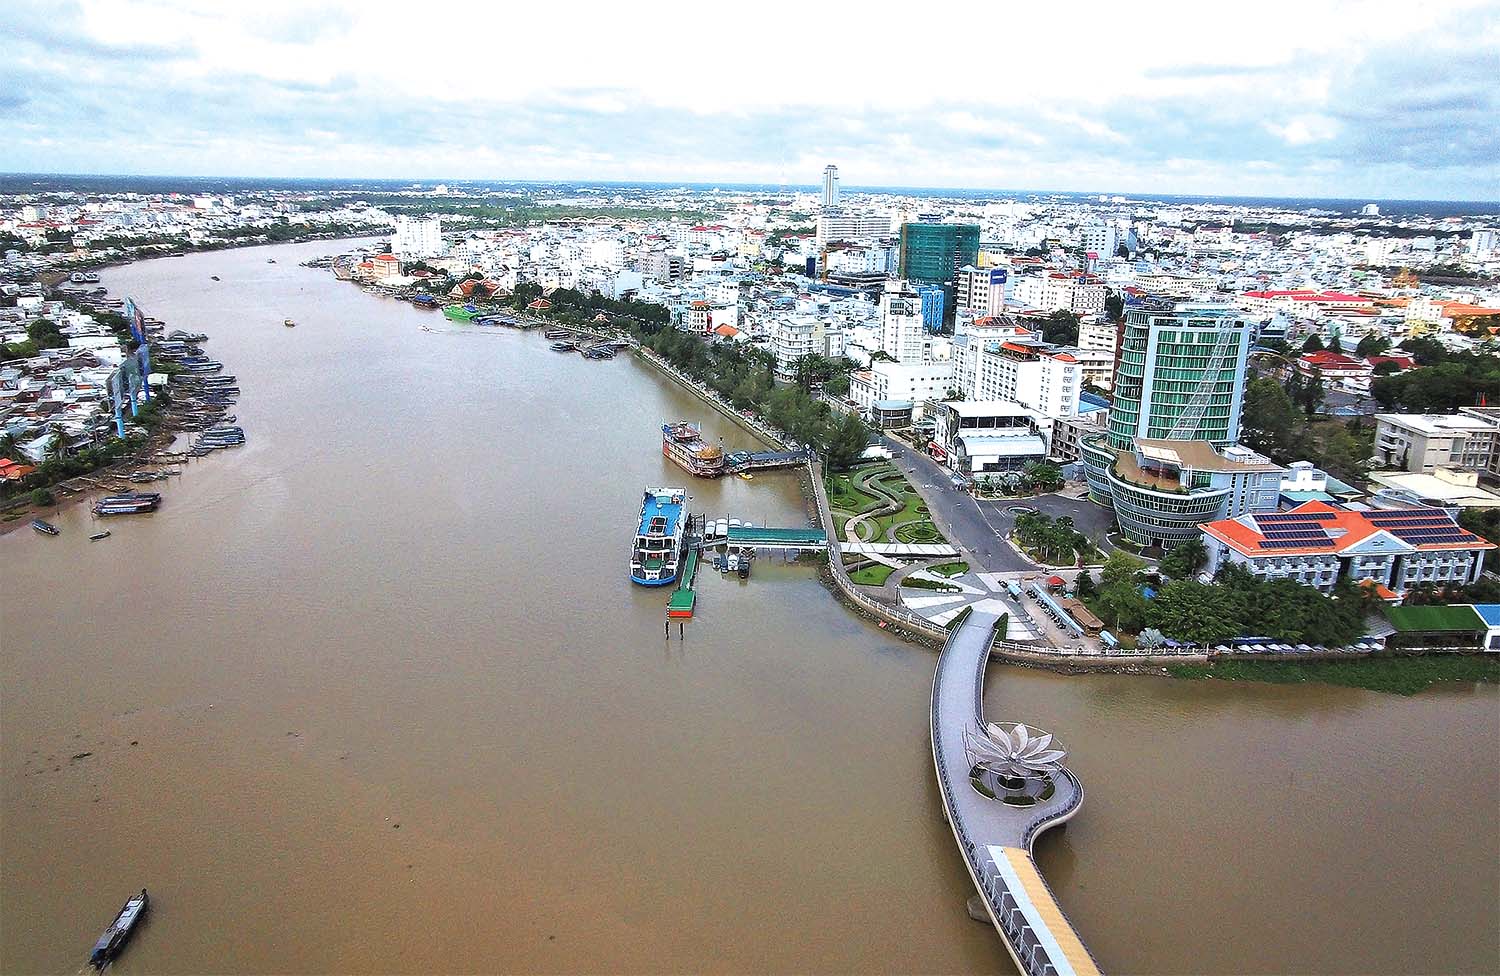 TP. Cần Thơ đang từng bước khẳng định vai trò trung tâm của vùng Đồng bằng sông Cửu Long	Ảnh: Anh Khoa